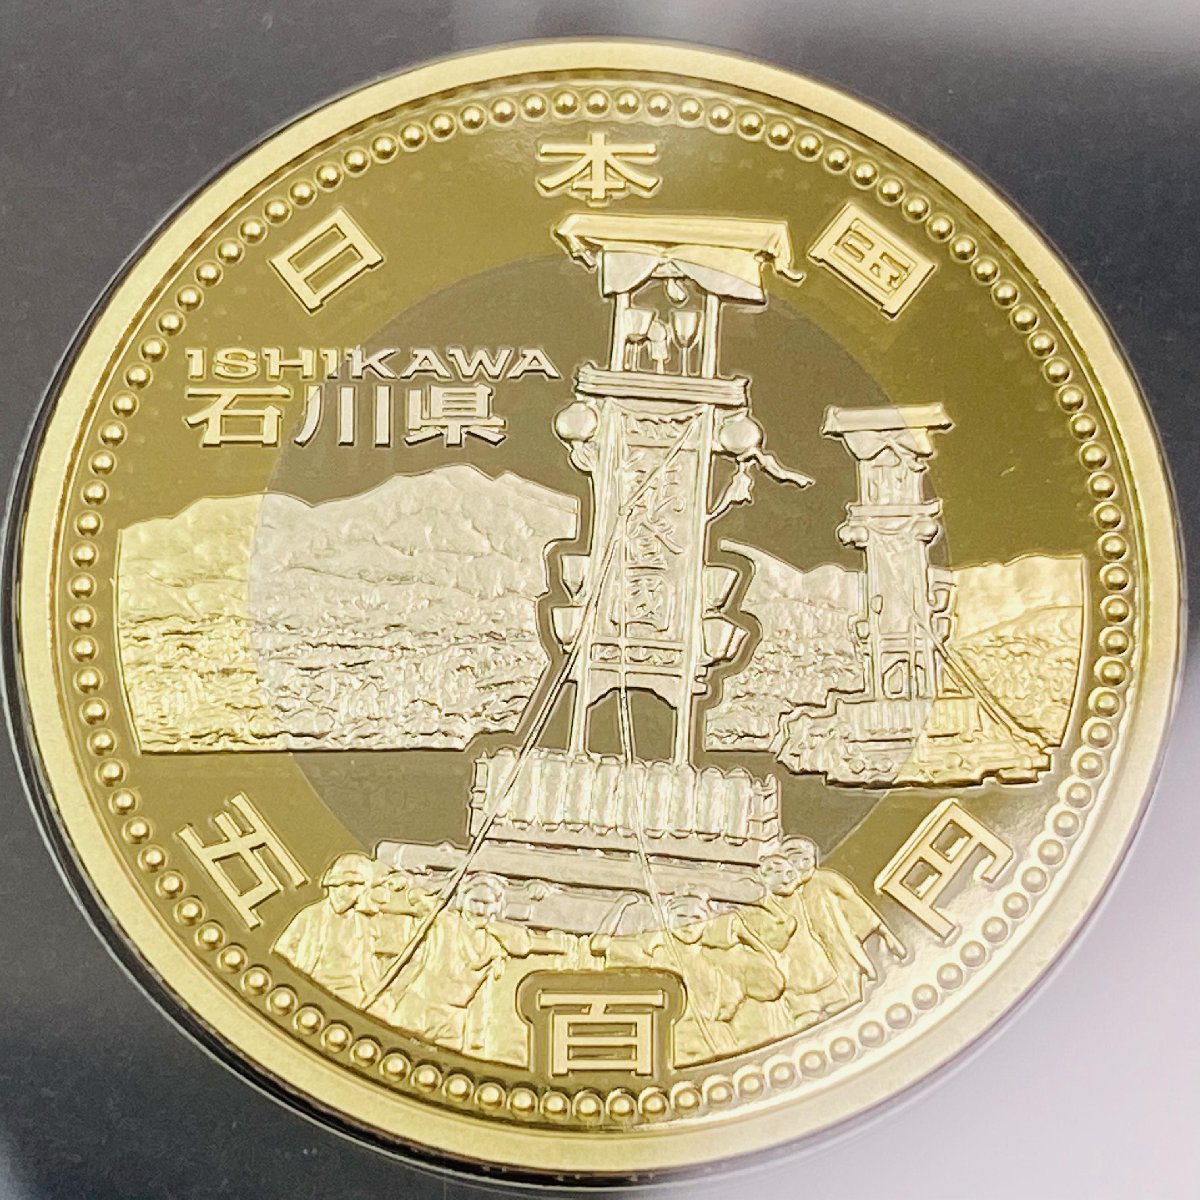 島根県 地方自治法施行60周年記念 500円硬貨 プルーフ硬貨